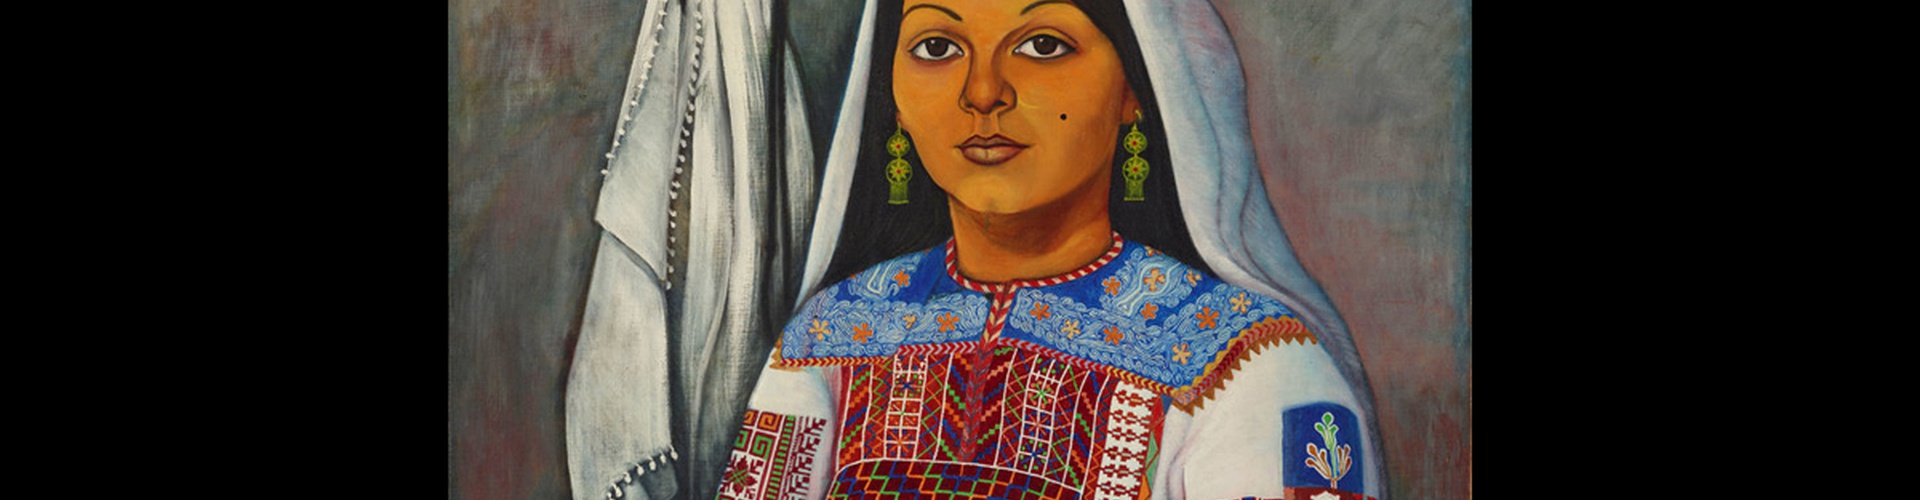 گالری نقاشی های عبدالرحمان مزین از فلسطین